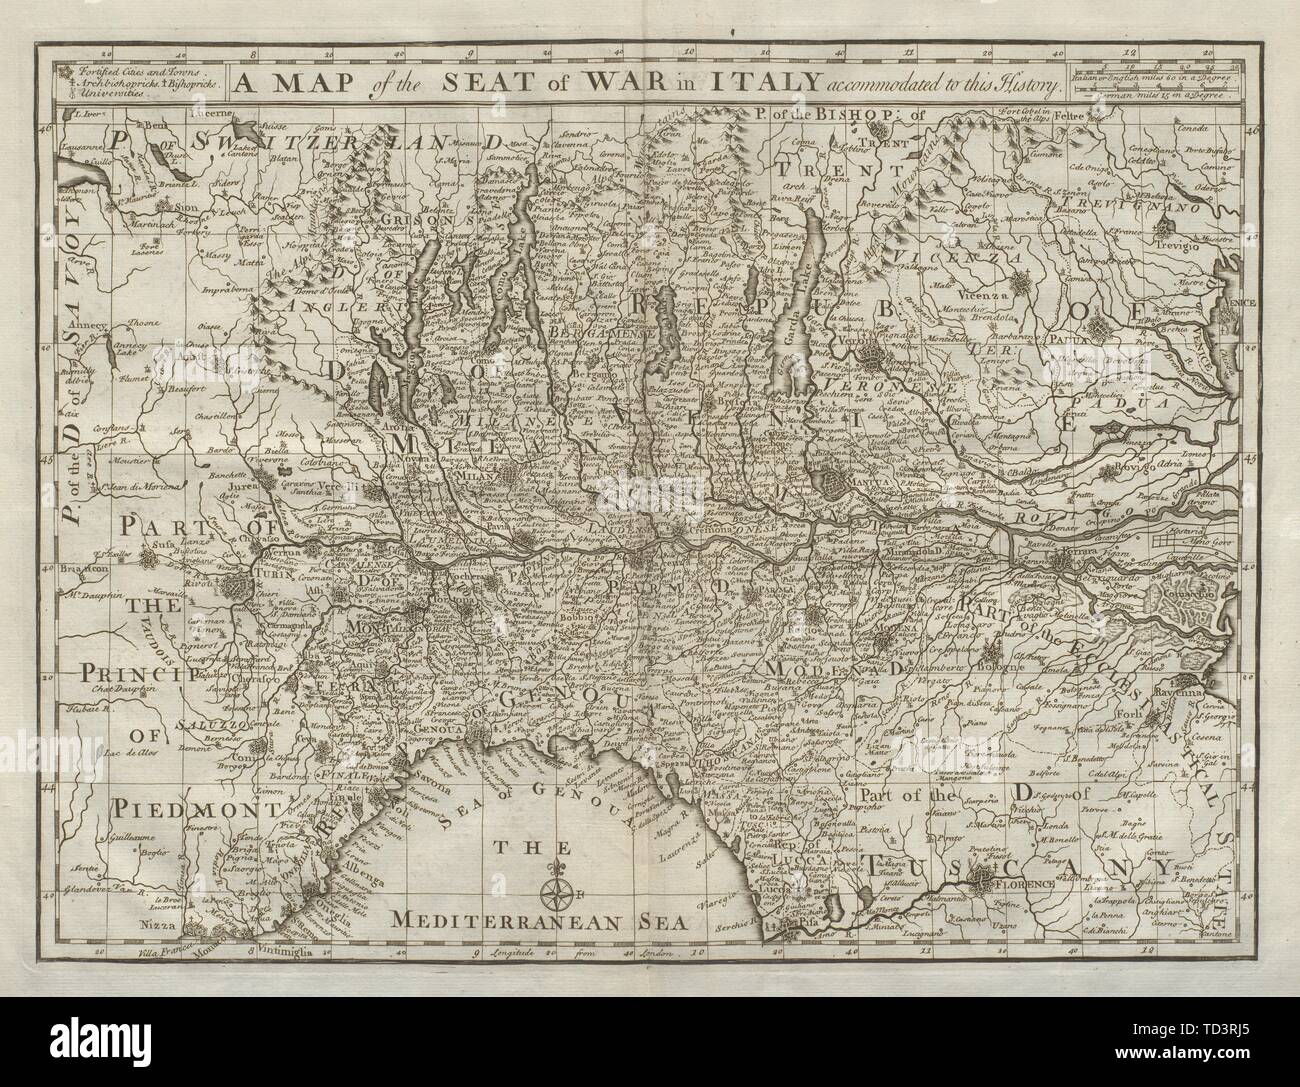 Una mappa della sede di guerra in Italia alloggiato a questa storia. DU BOSC 1736 Foto Stock